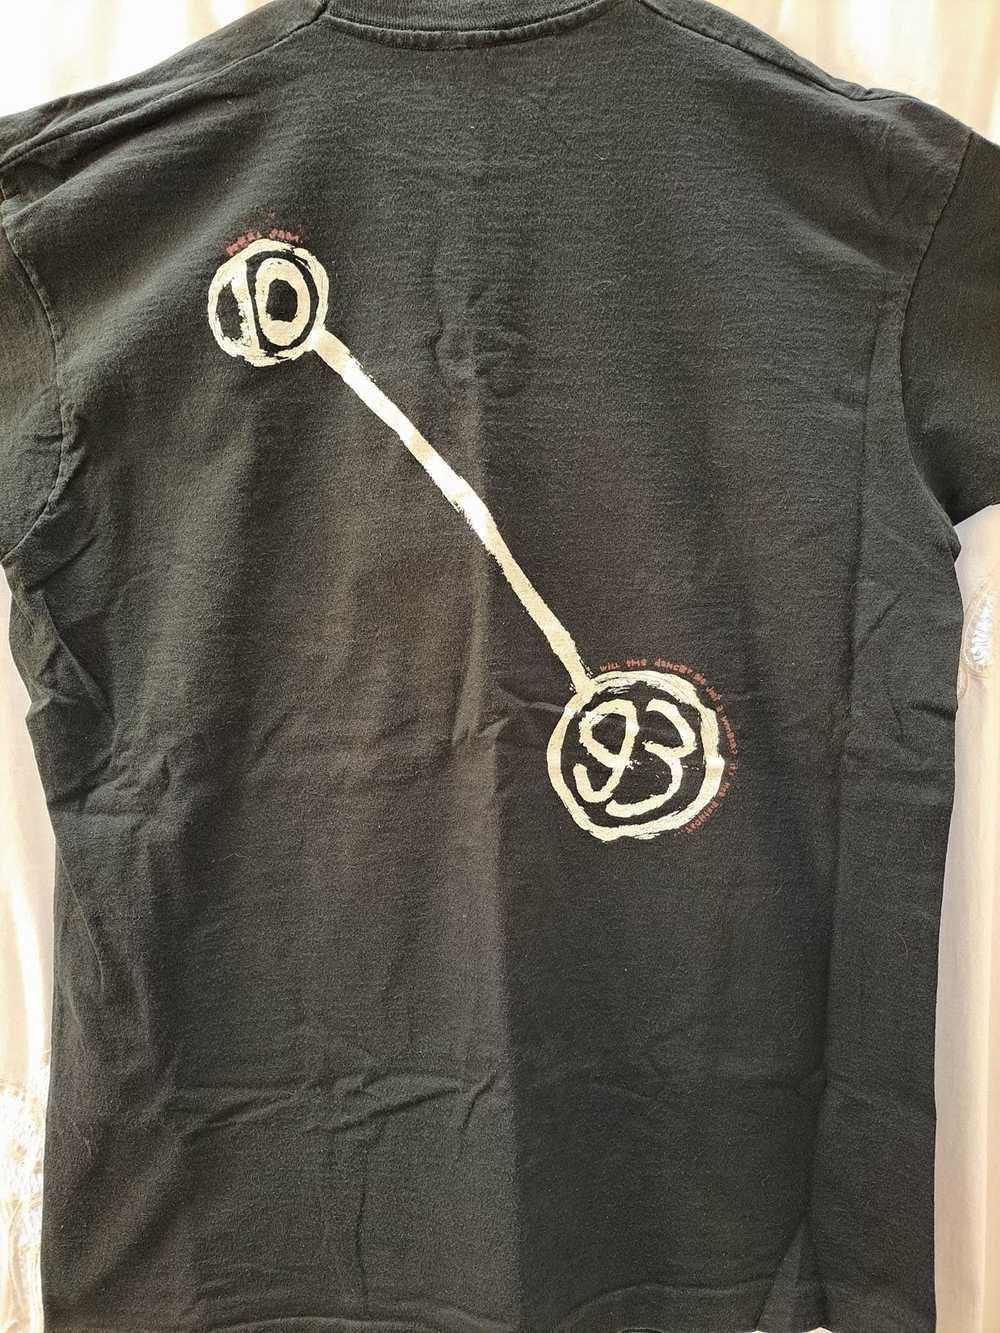 Rock T Shirt Pearl Jam Reject Vintage XL T-Shirt - image 5